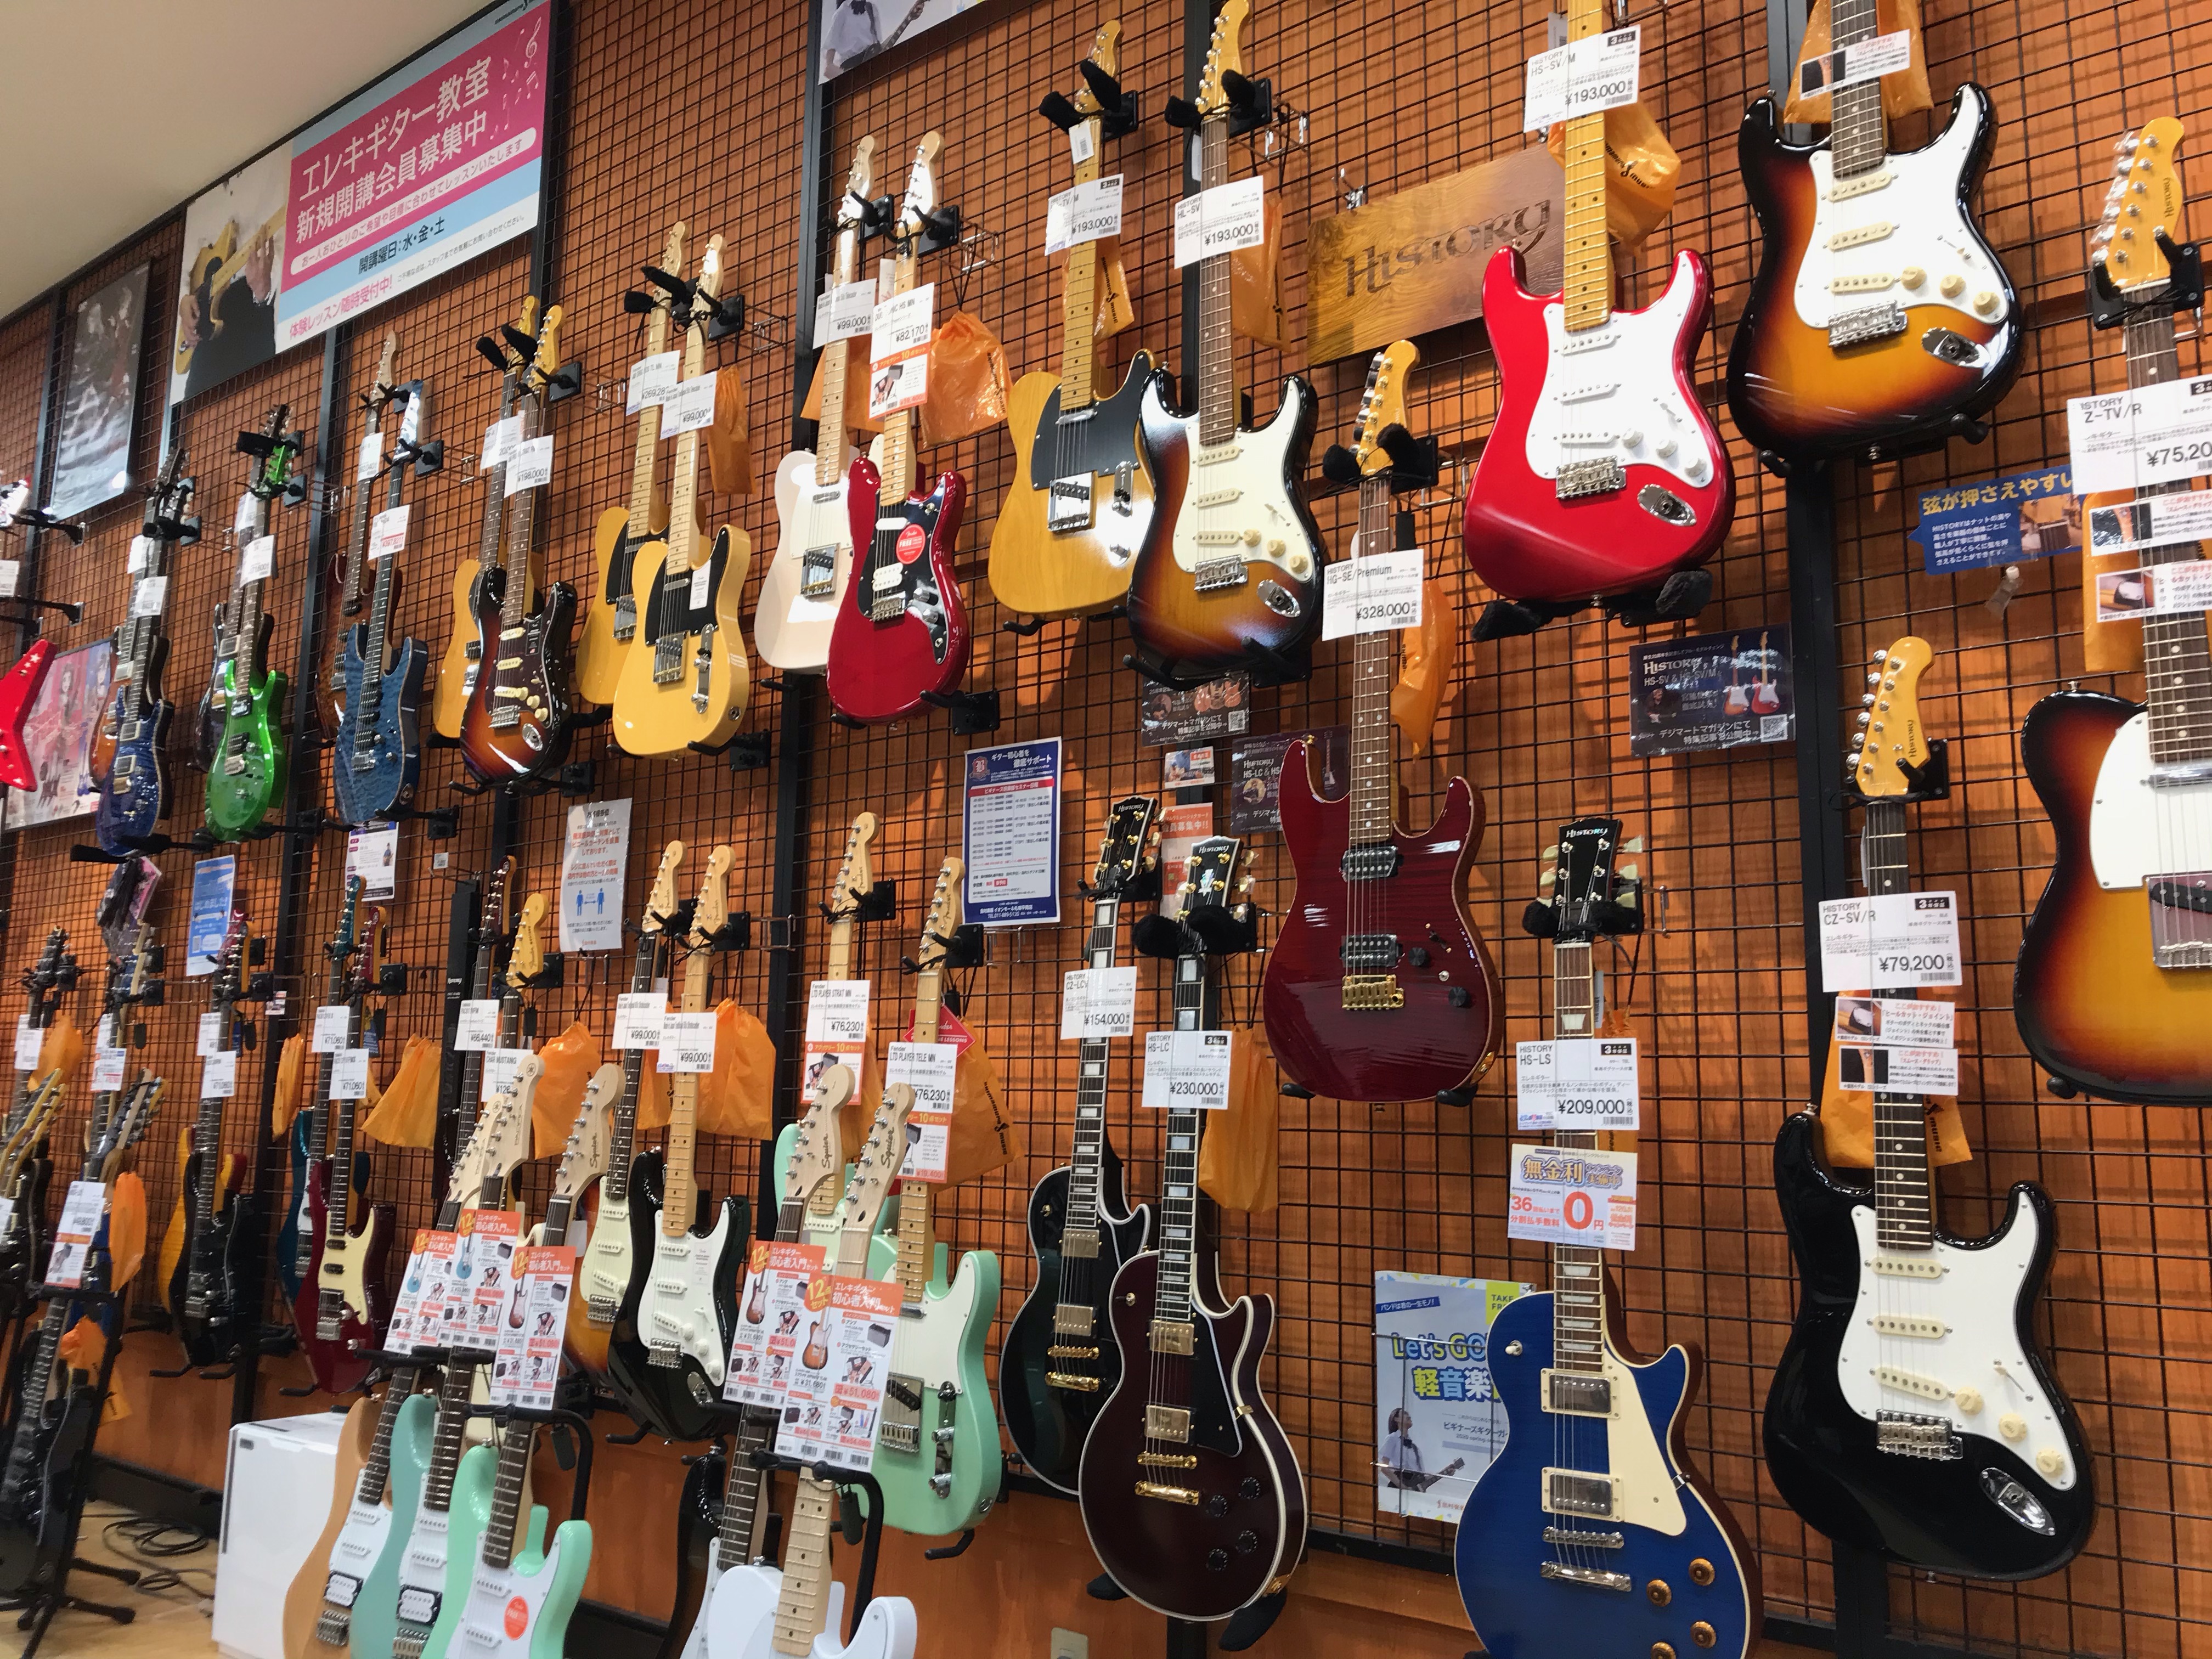 *初めてのギター選び　札幌平岡店ギター担当者が教えるギター選びのポイント！ 皆様こんにちは、イオンモール札幌平岡店ギター担当の田中です。今ギターを始めたいと検討されている方へ、今回はギター選びのポイントについてお話をしていきます。エレキギターの種類や違い、始めるにあたって必要なアイテム等を紹介してい […]